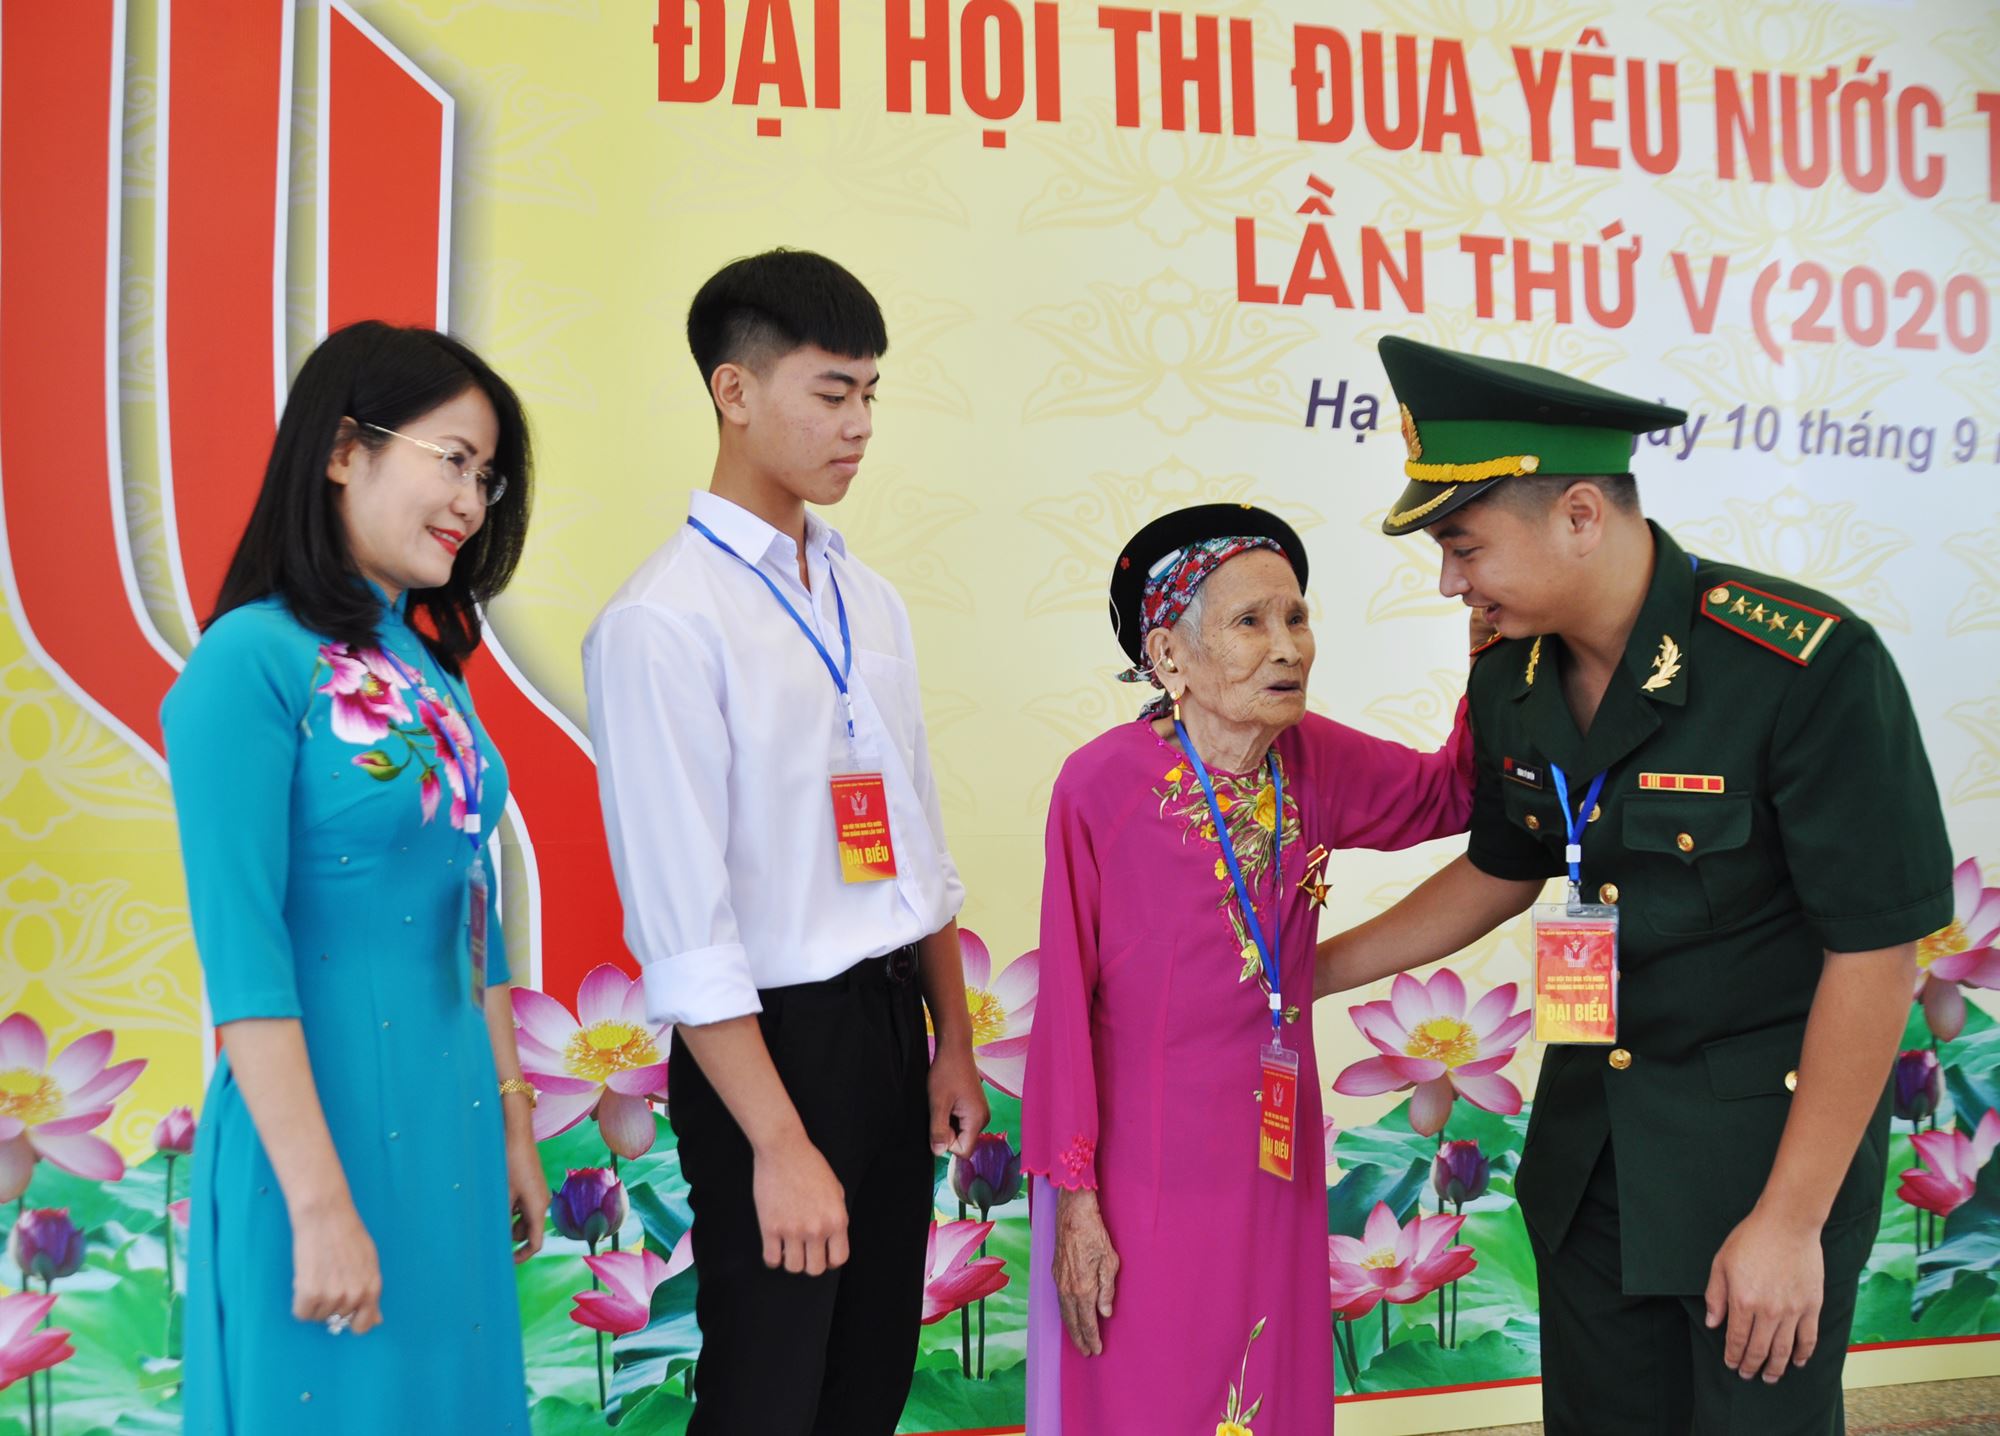 Mẹ VNAH Nguyễn Thị Ngăn động viên các điển hình tiên tiến thi đua yêu nước đại hội.